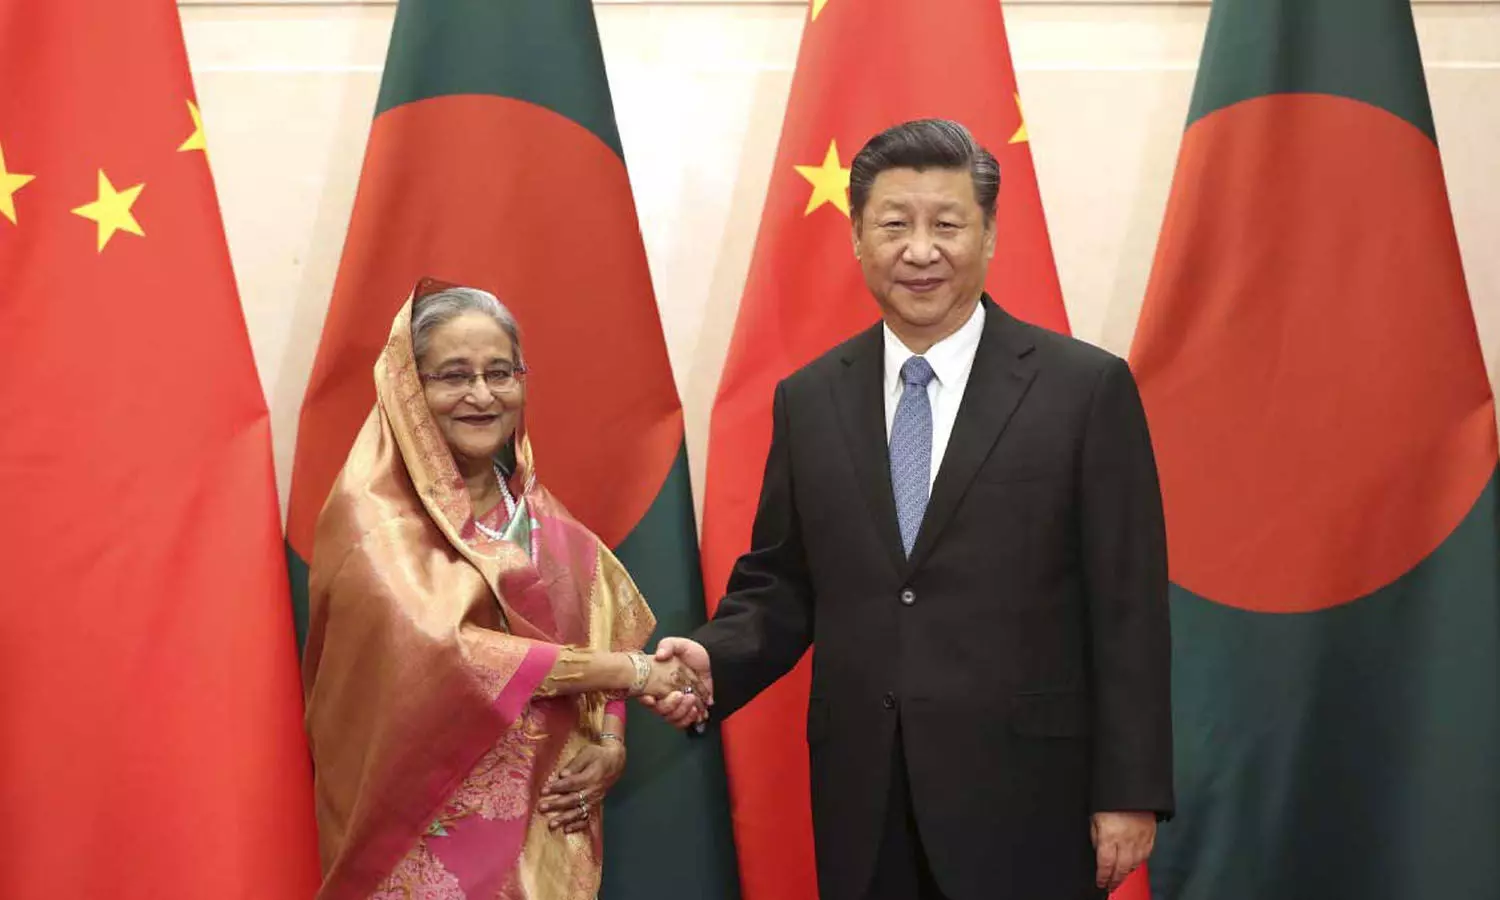 Sheikh Hasina and Xi Jinping